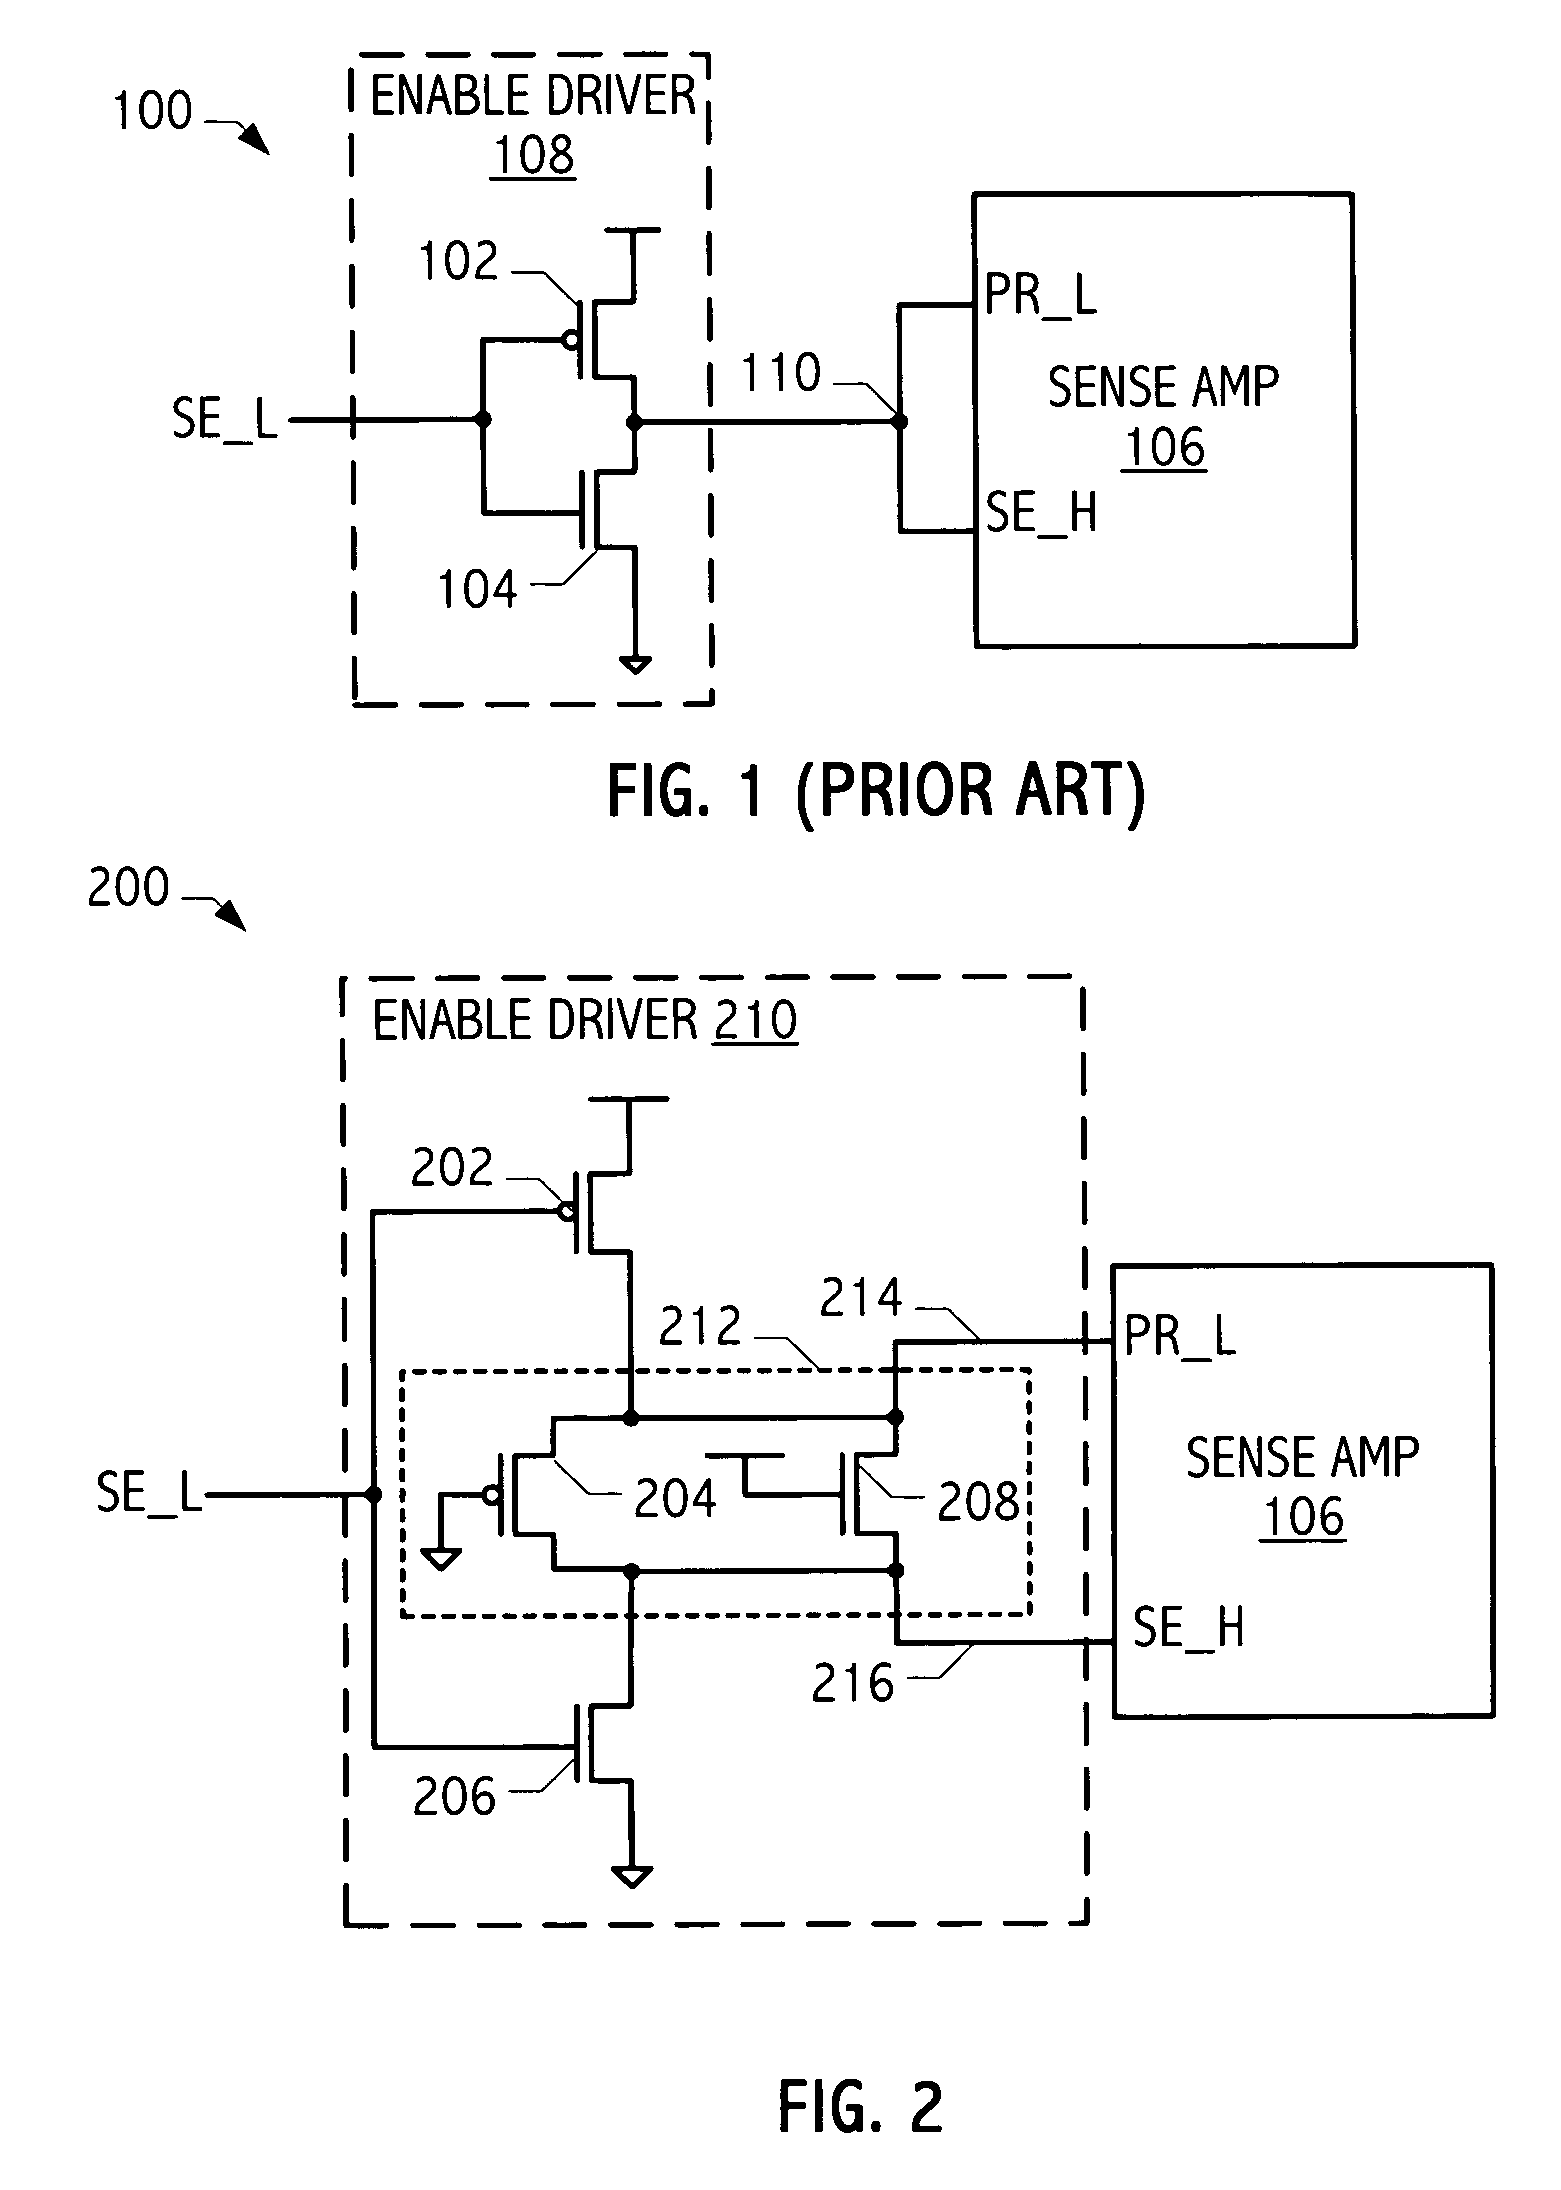 Pulse shaper circuit for sense amplifier enable driver